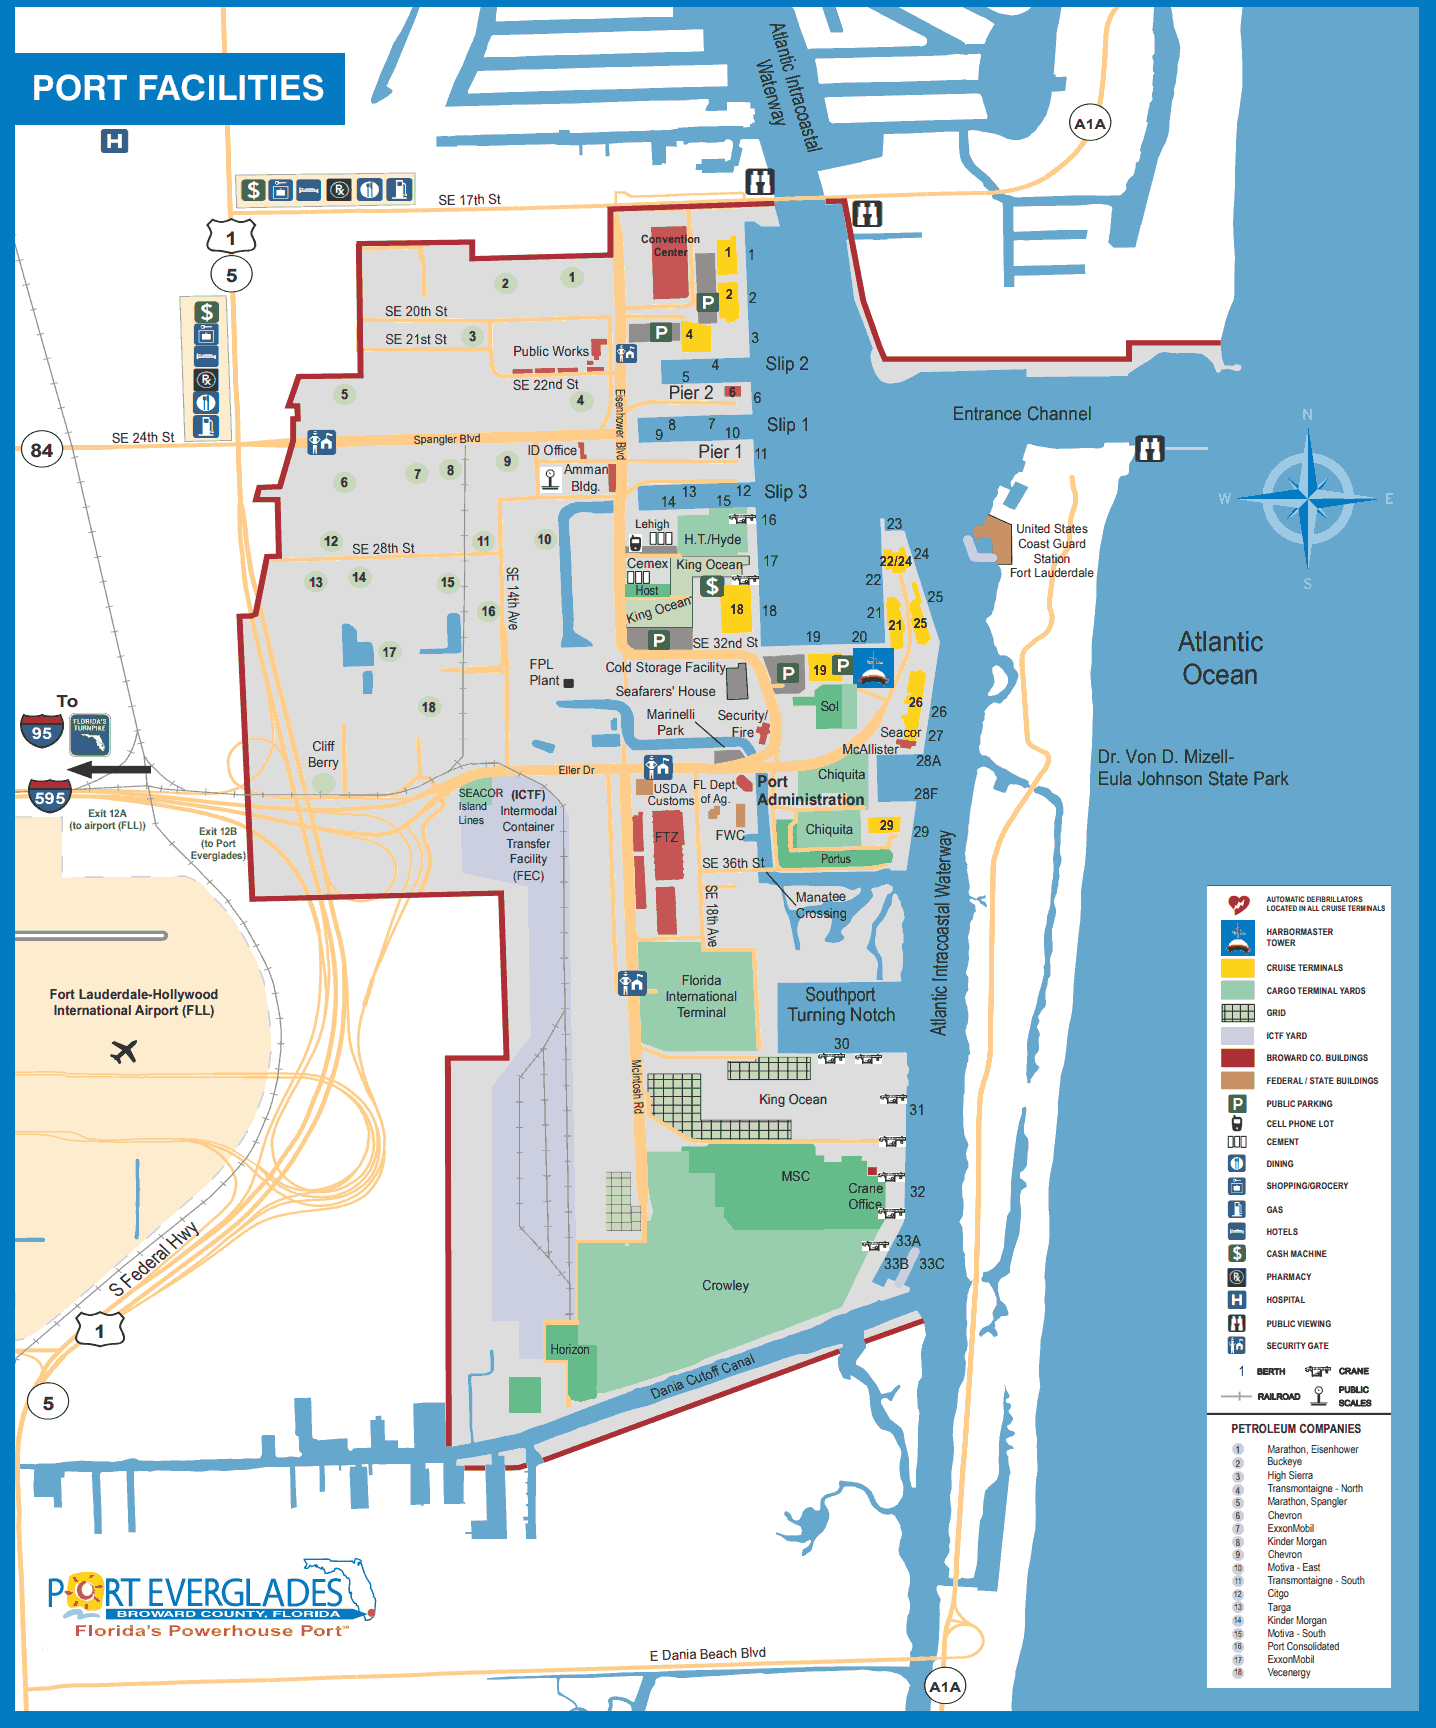 Port Everglades port facilities map